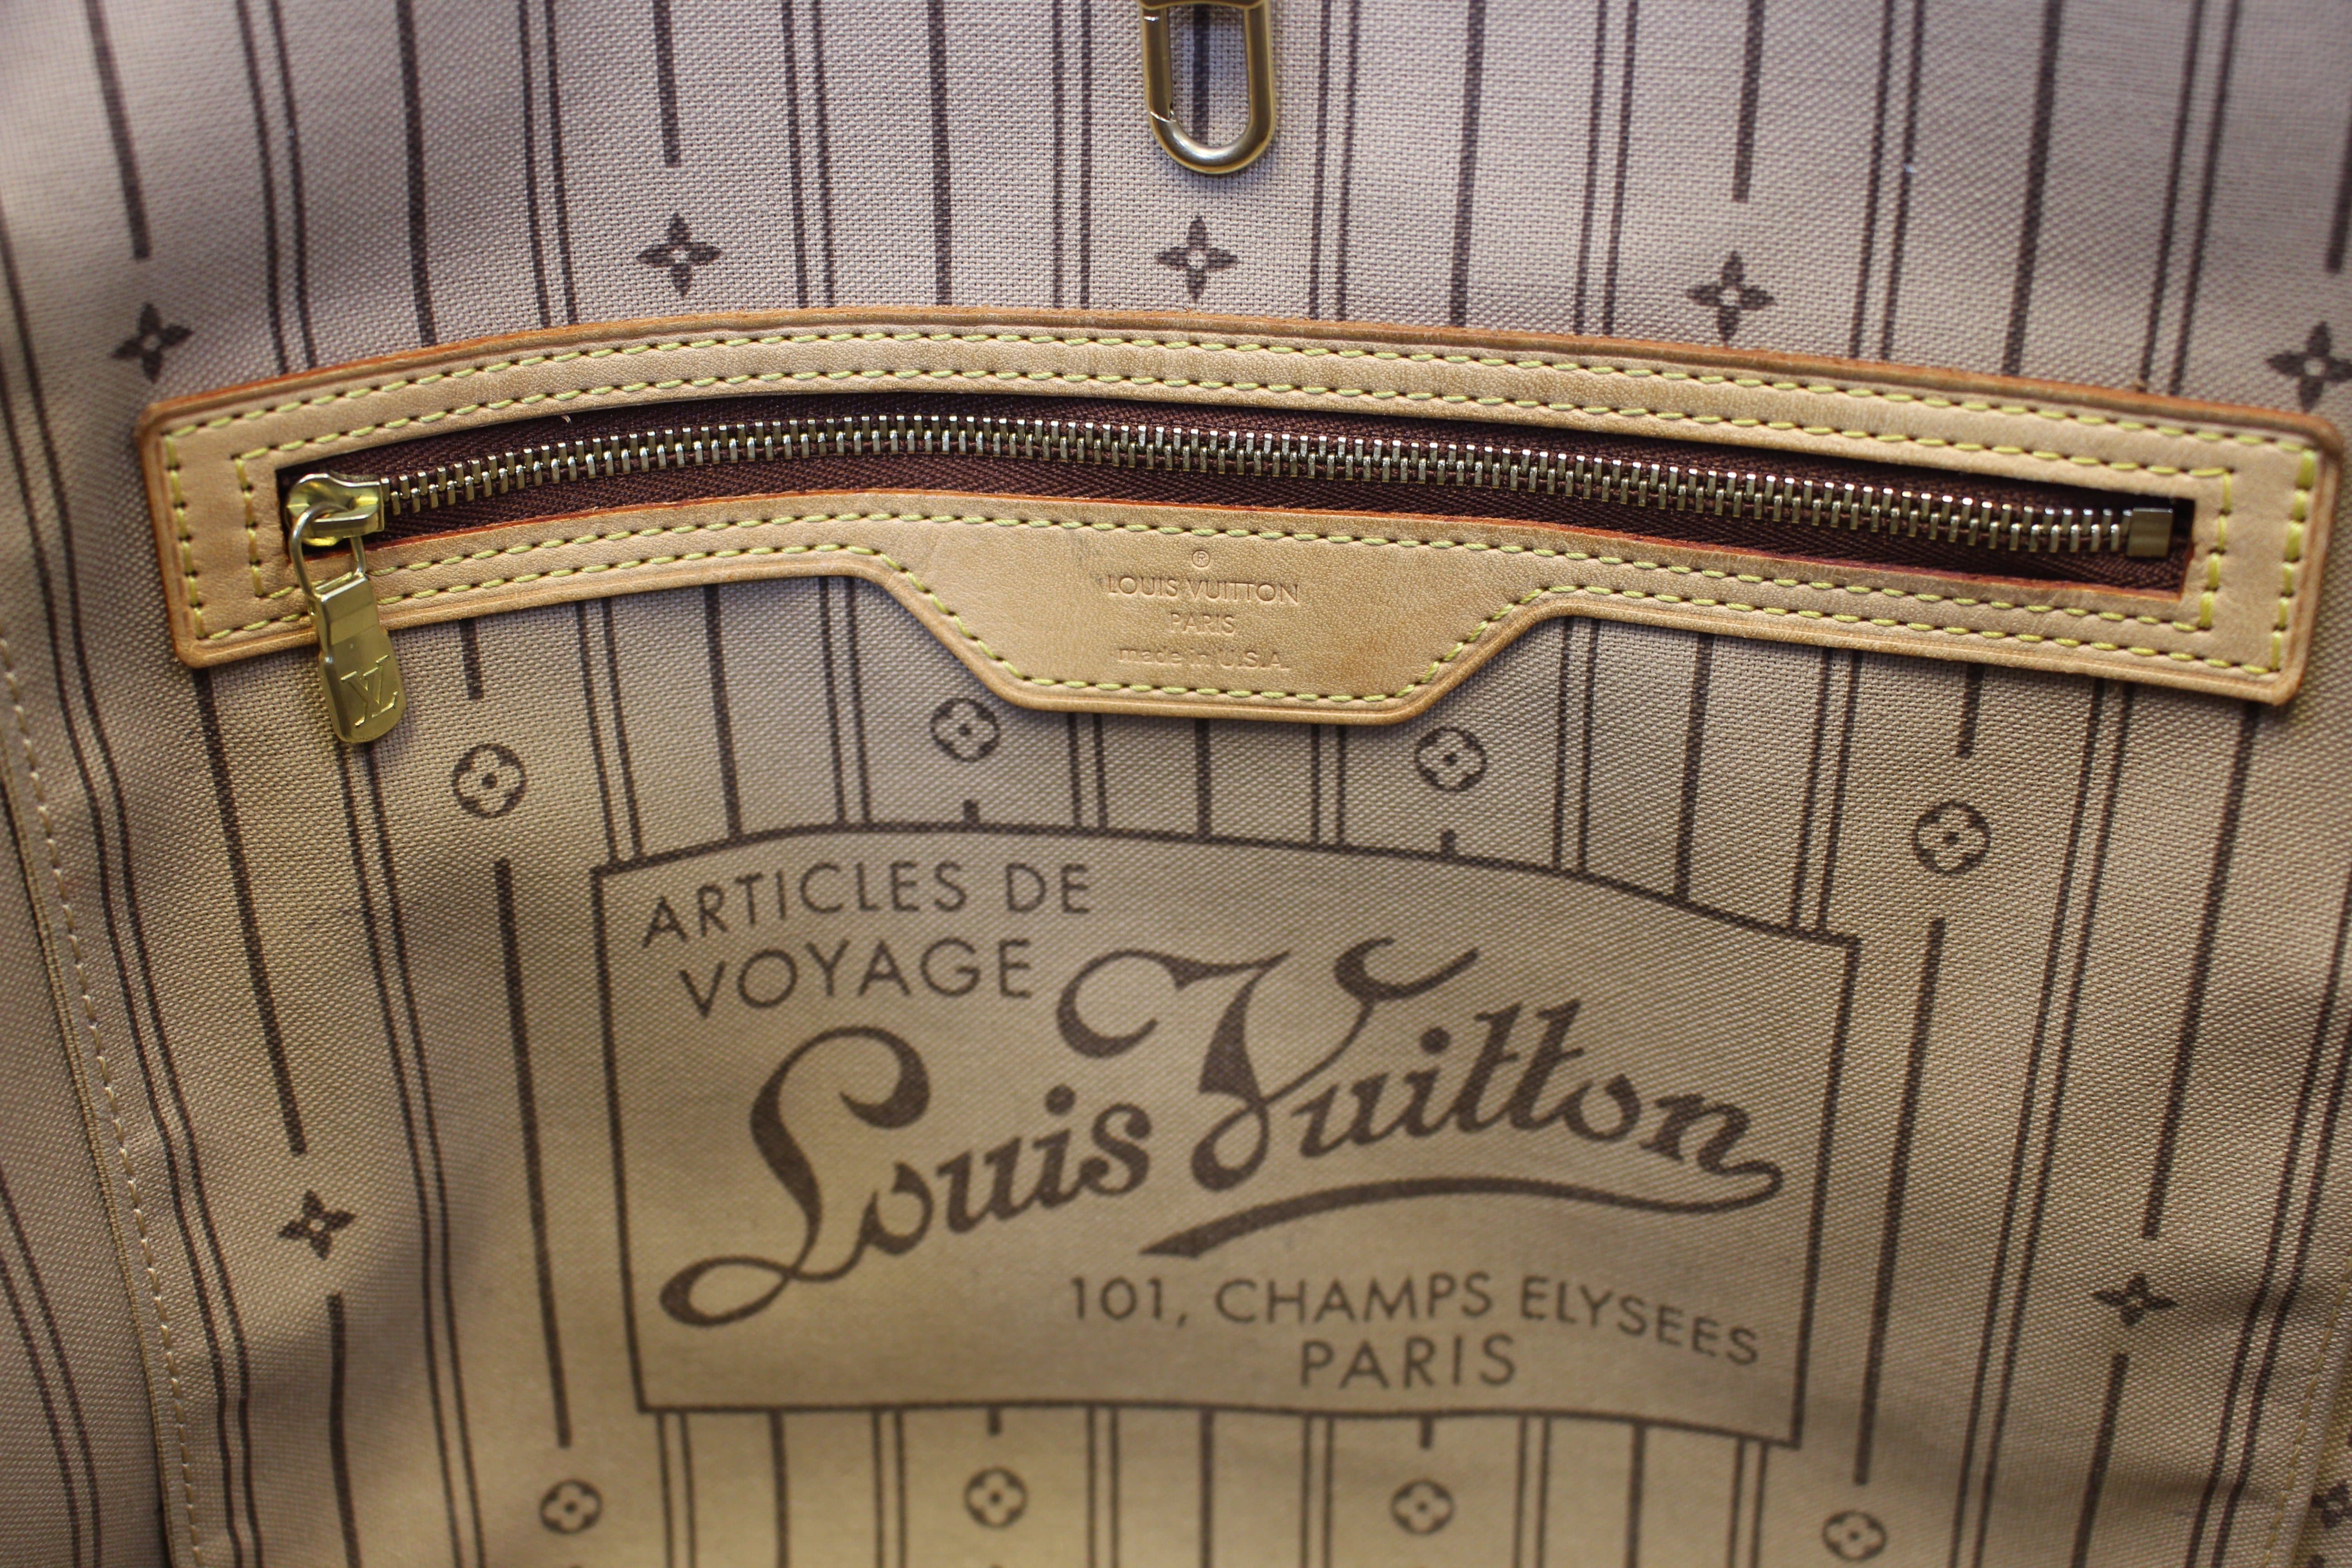 Louis Vuitton 101 Champs Elysees Paris